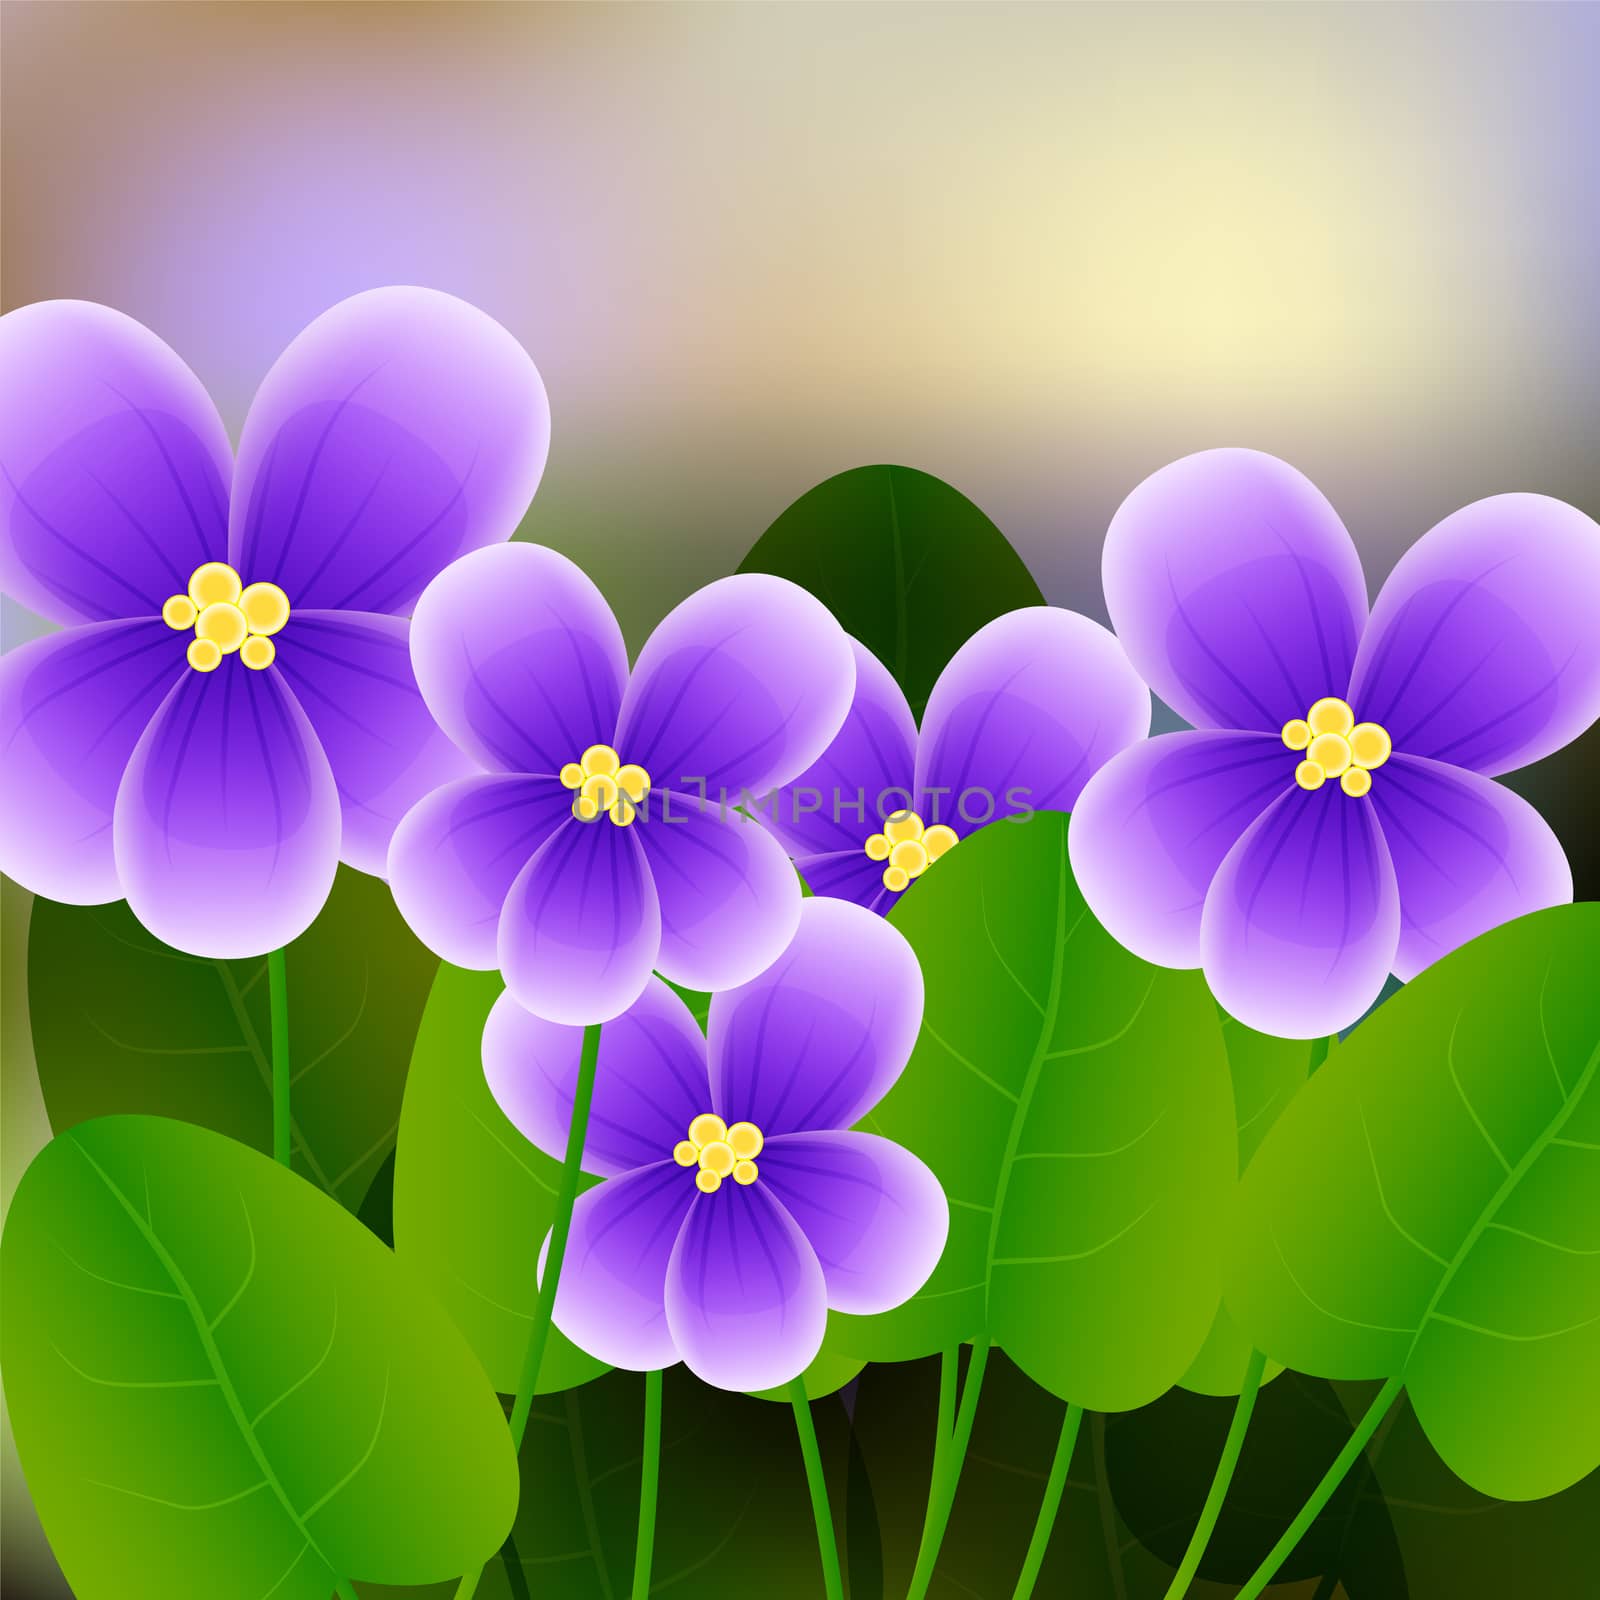 Spring background with blossom brunch of violet flowers. illustration